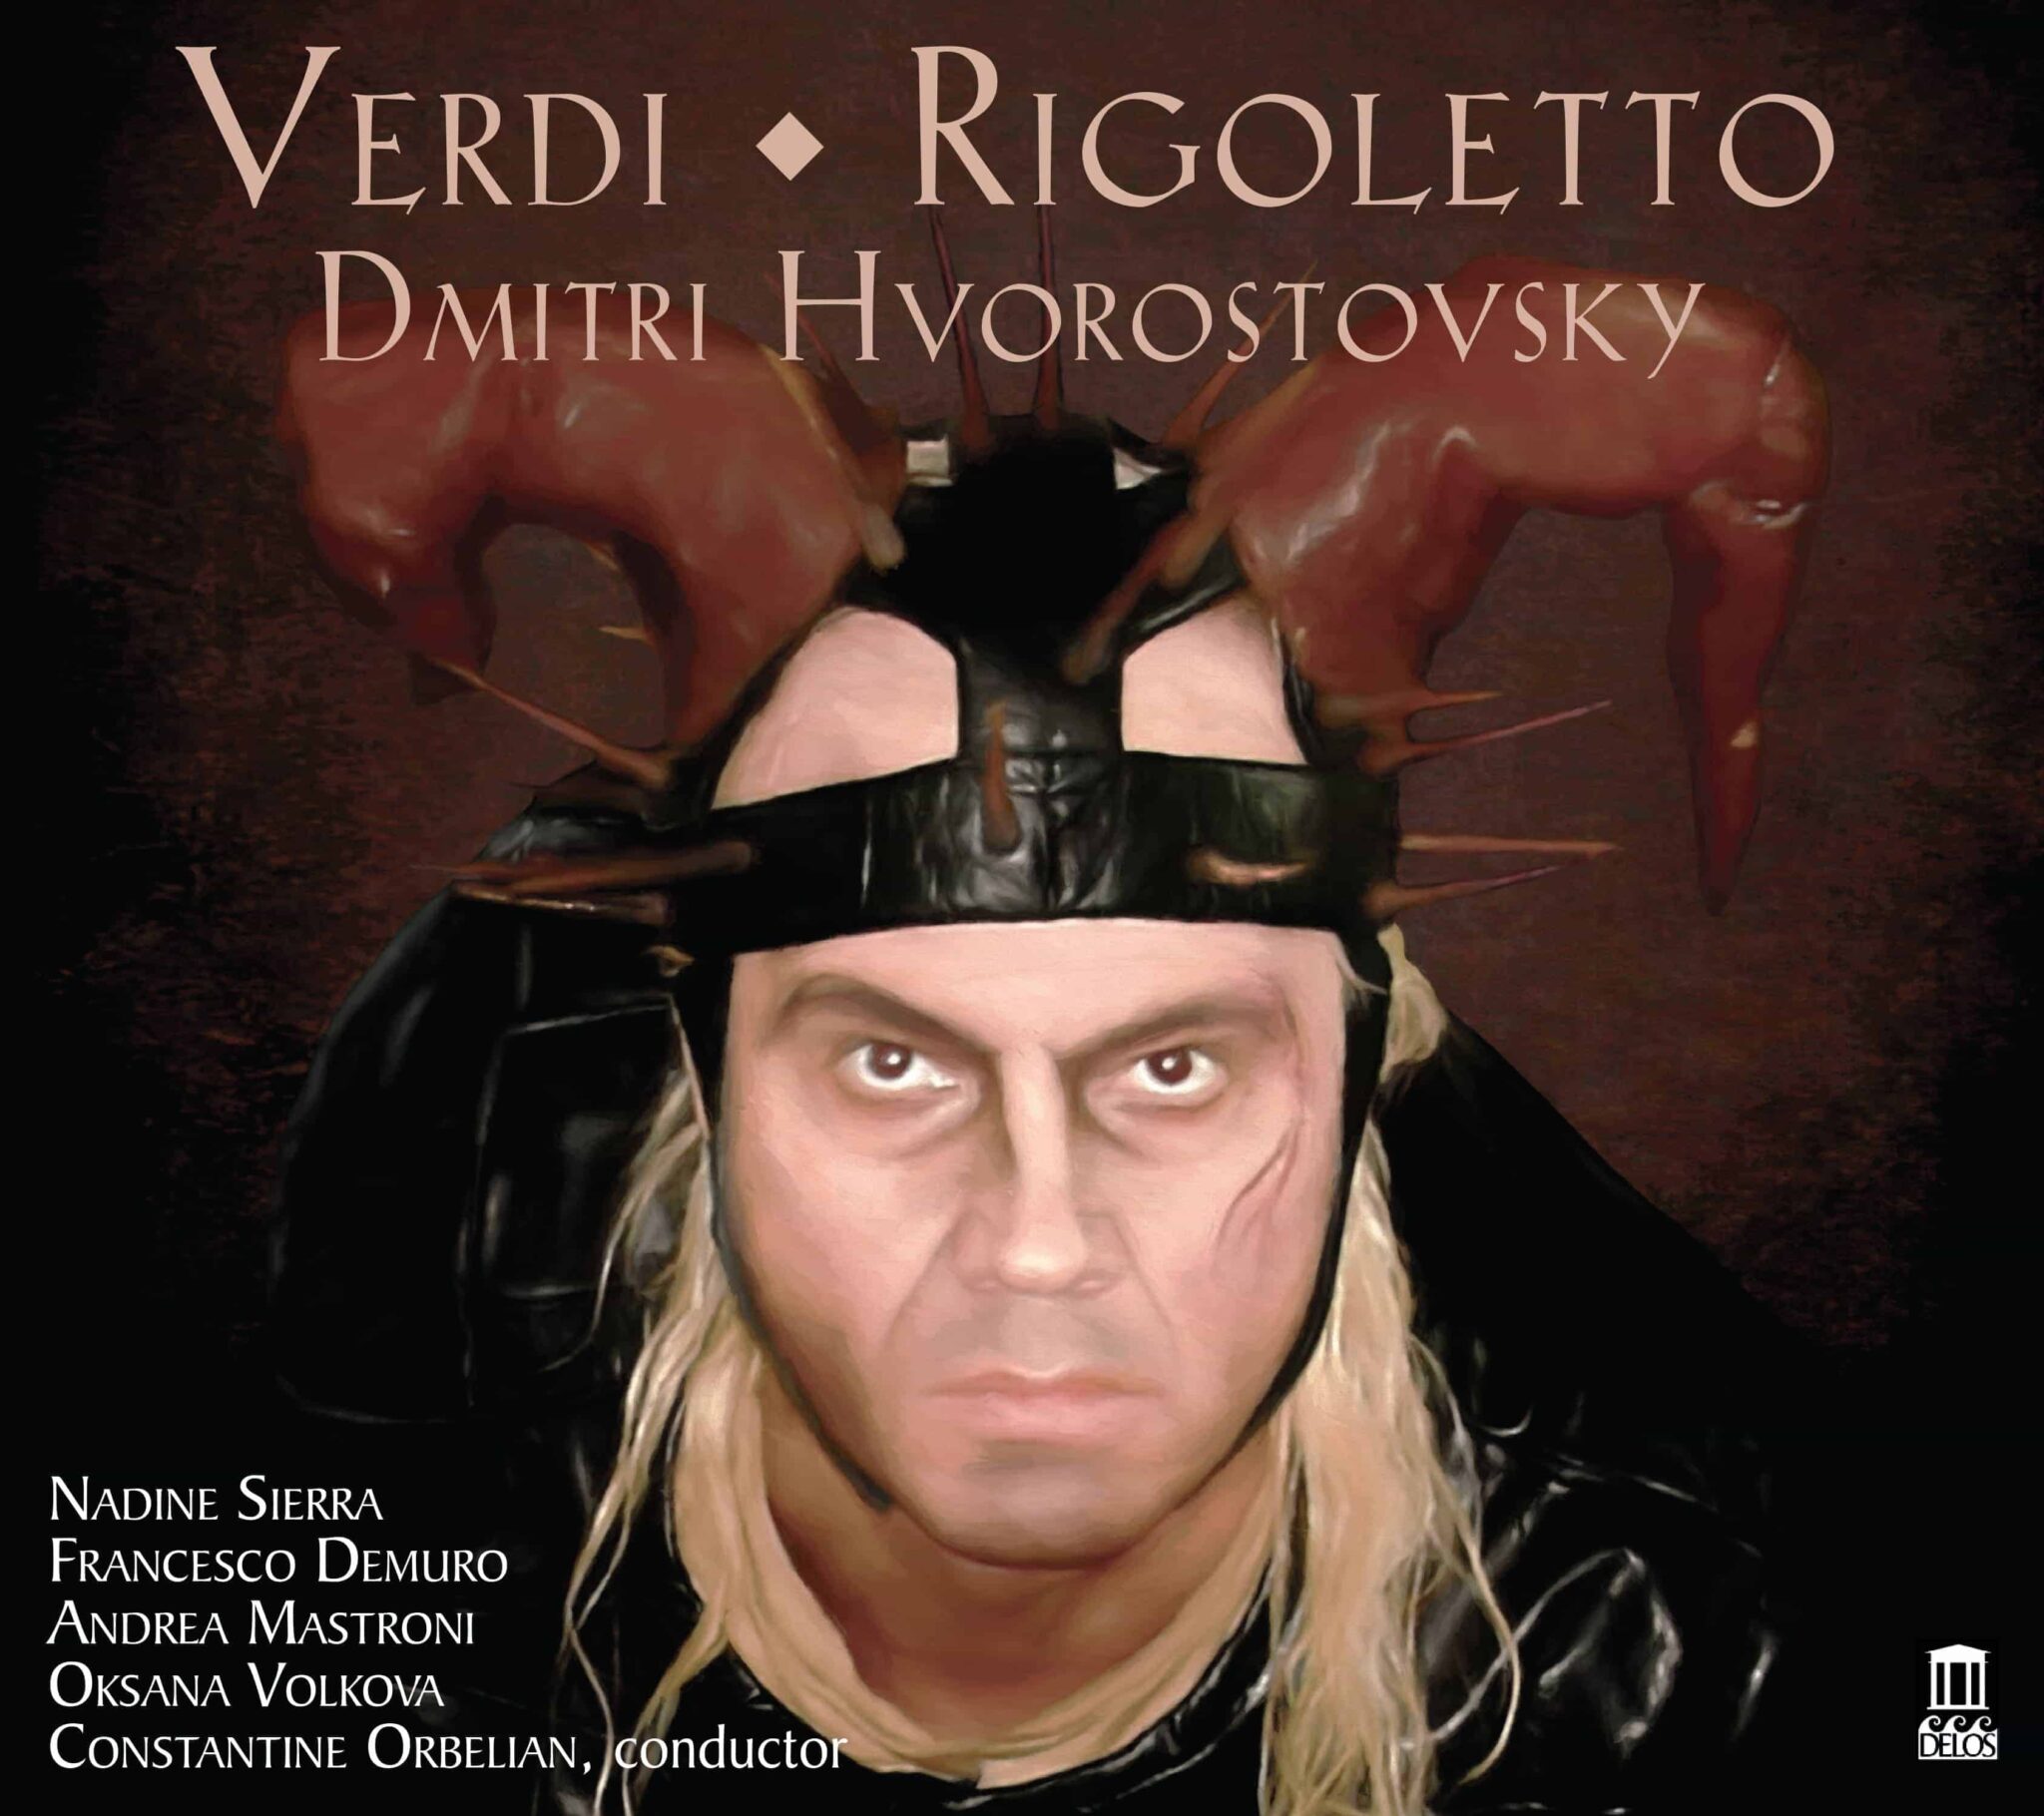 album cover photo - Verdi: Rigoletto - Dmitri Hvorostovsky